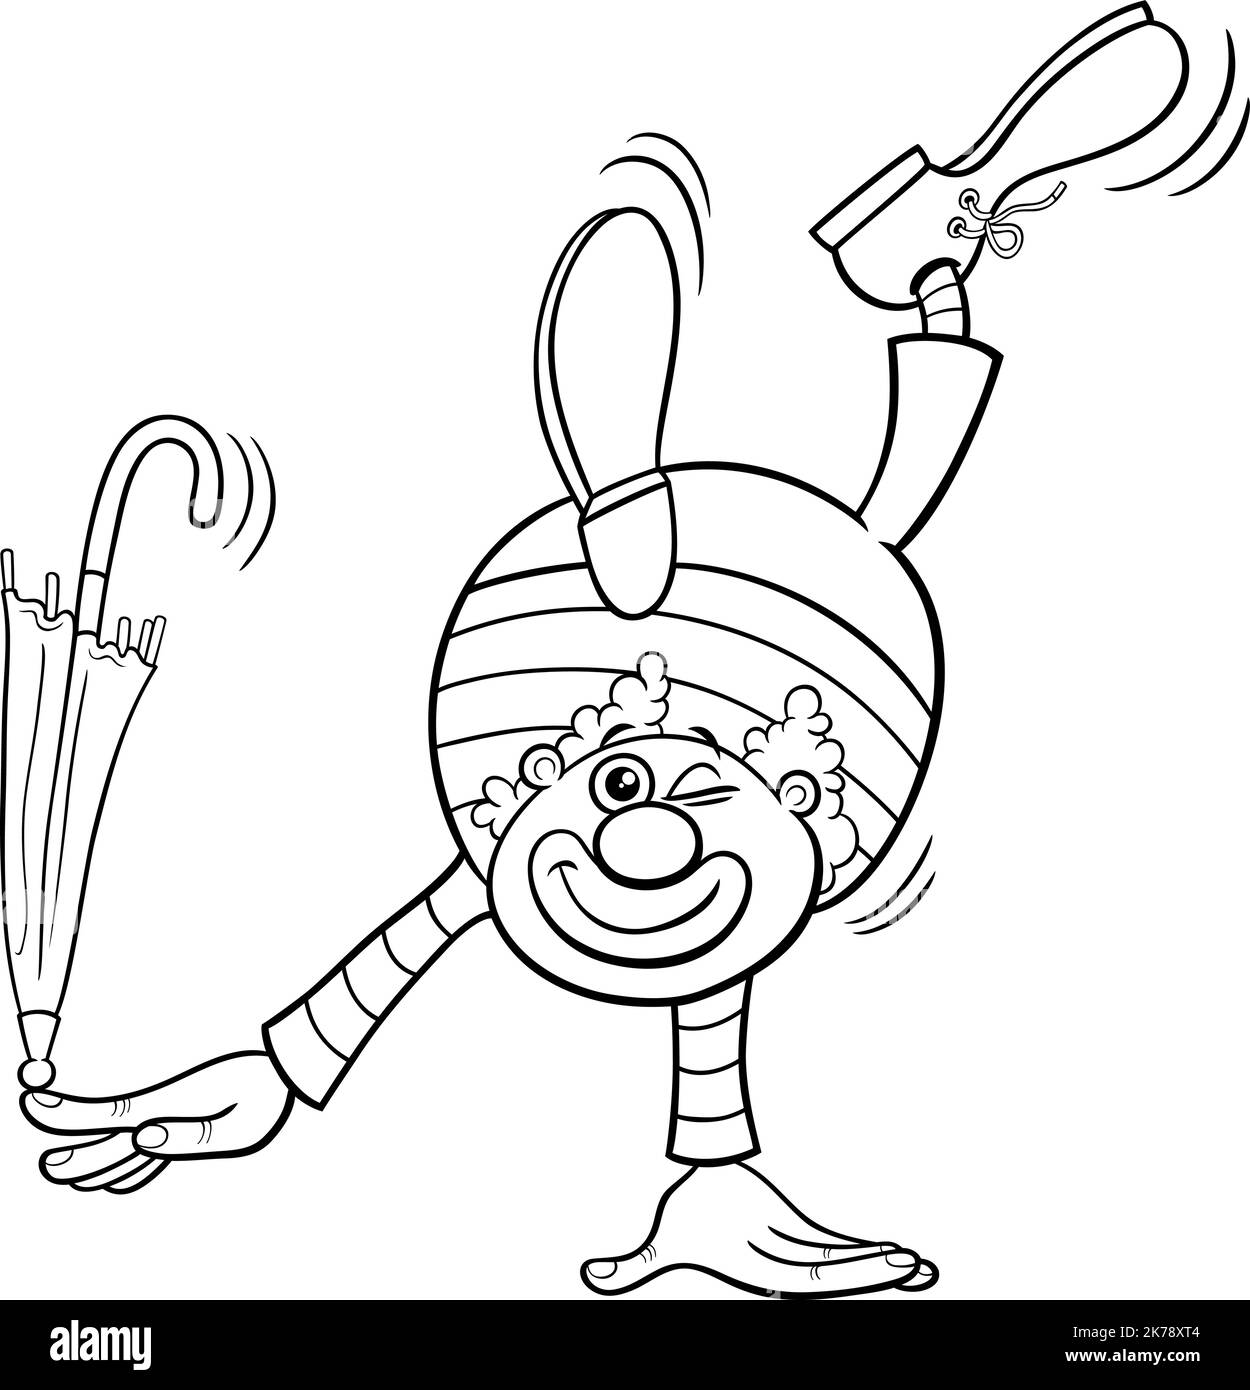 Dessin animé noir et blanc illustration de drôle clown personnage de bande dessinée avec parapluie coloriage page Illustration de Vecteur